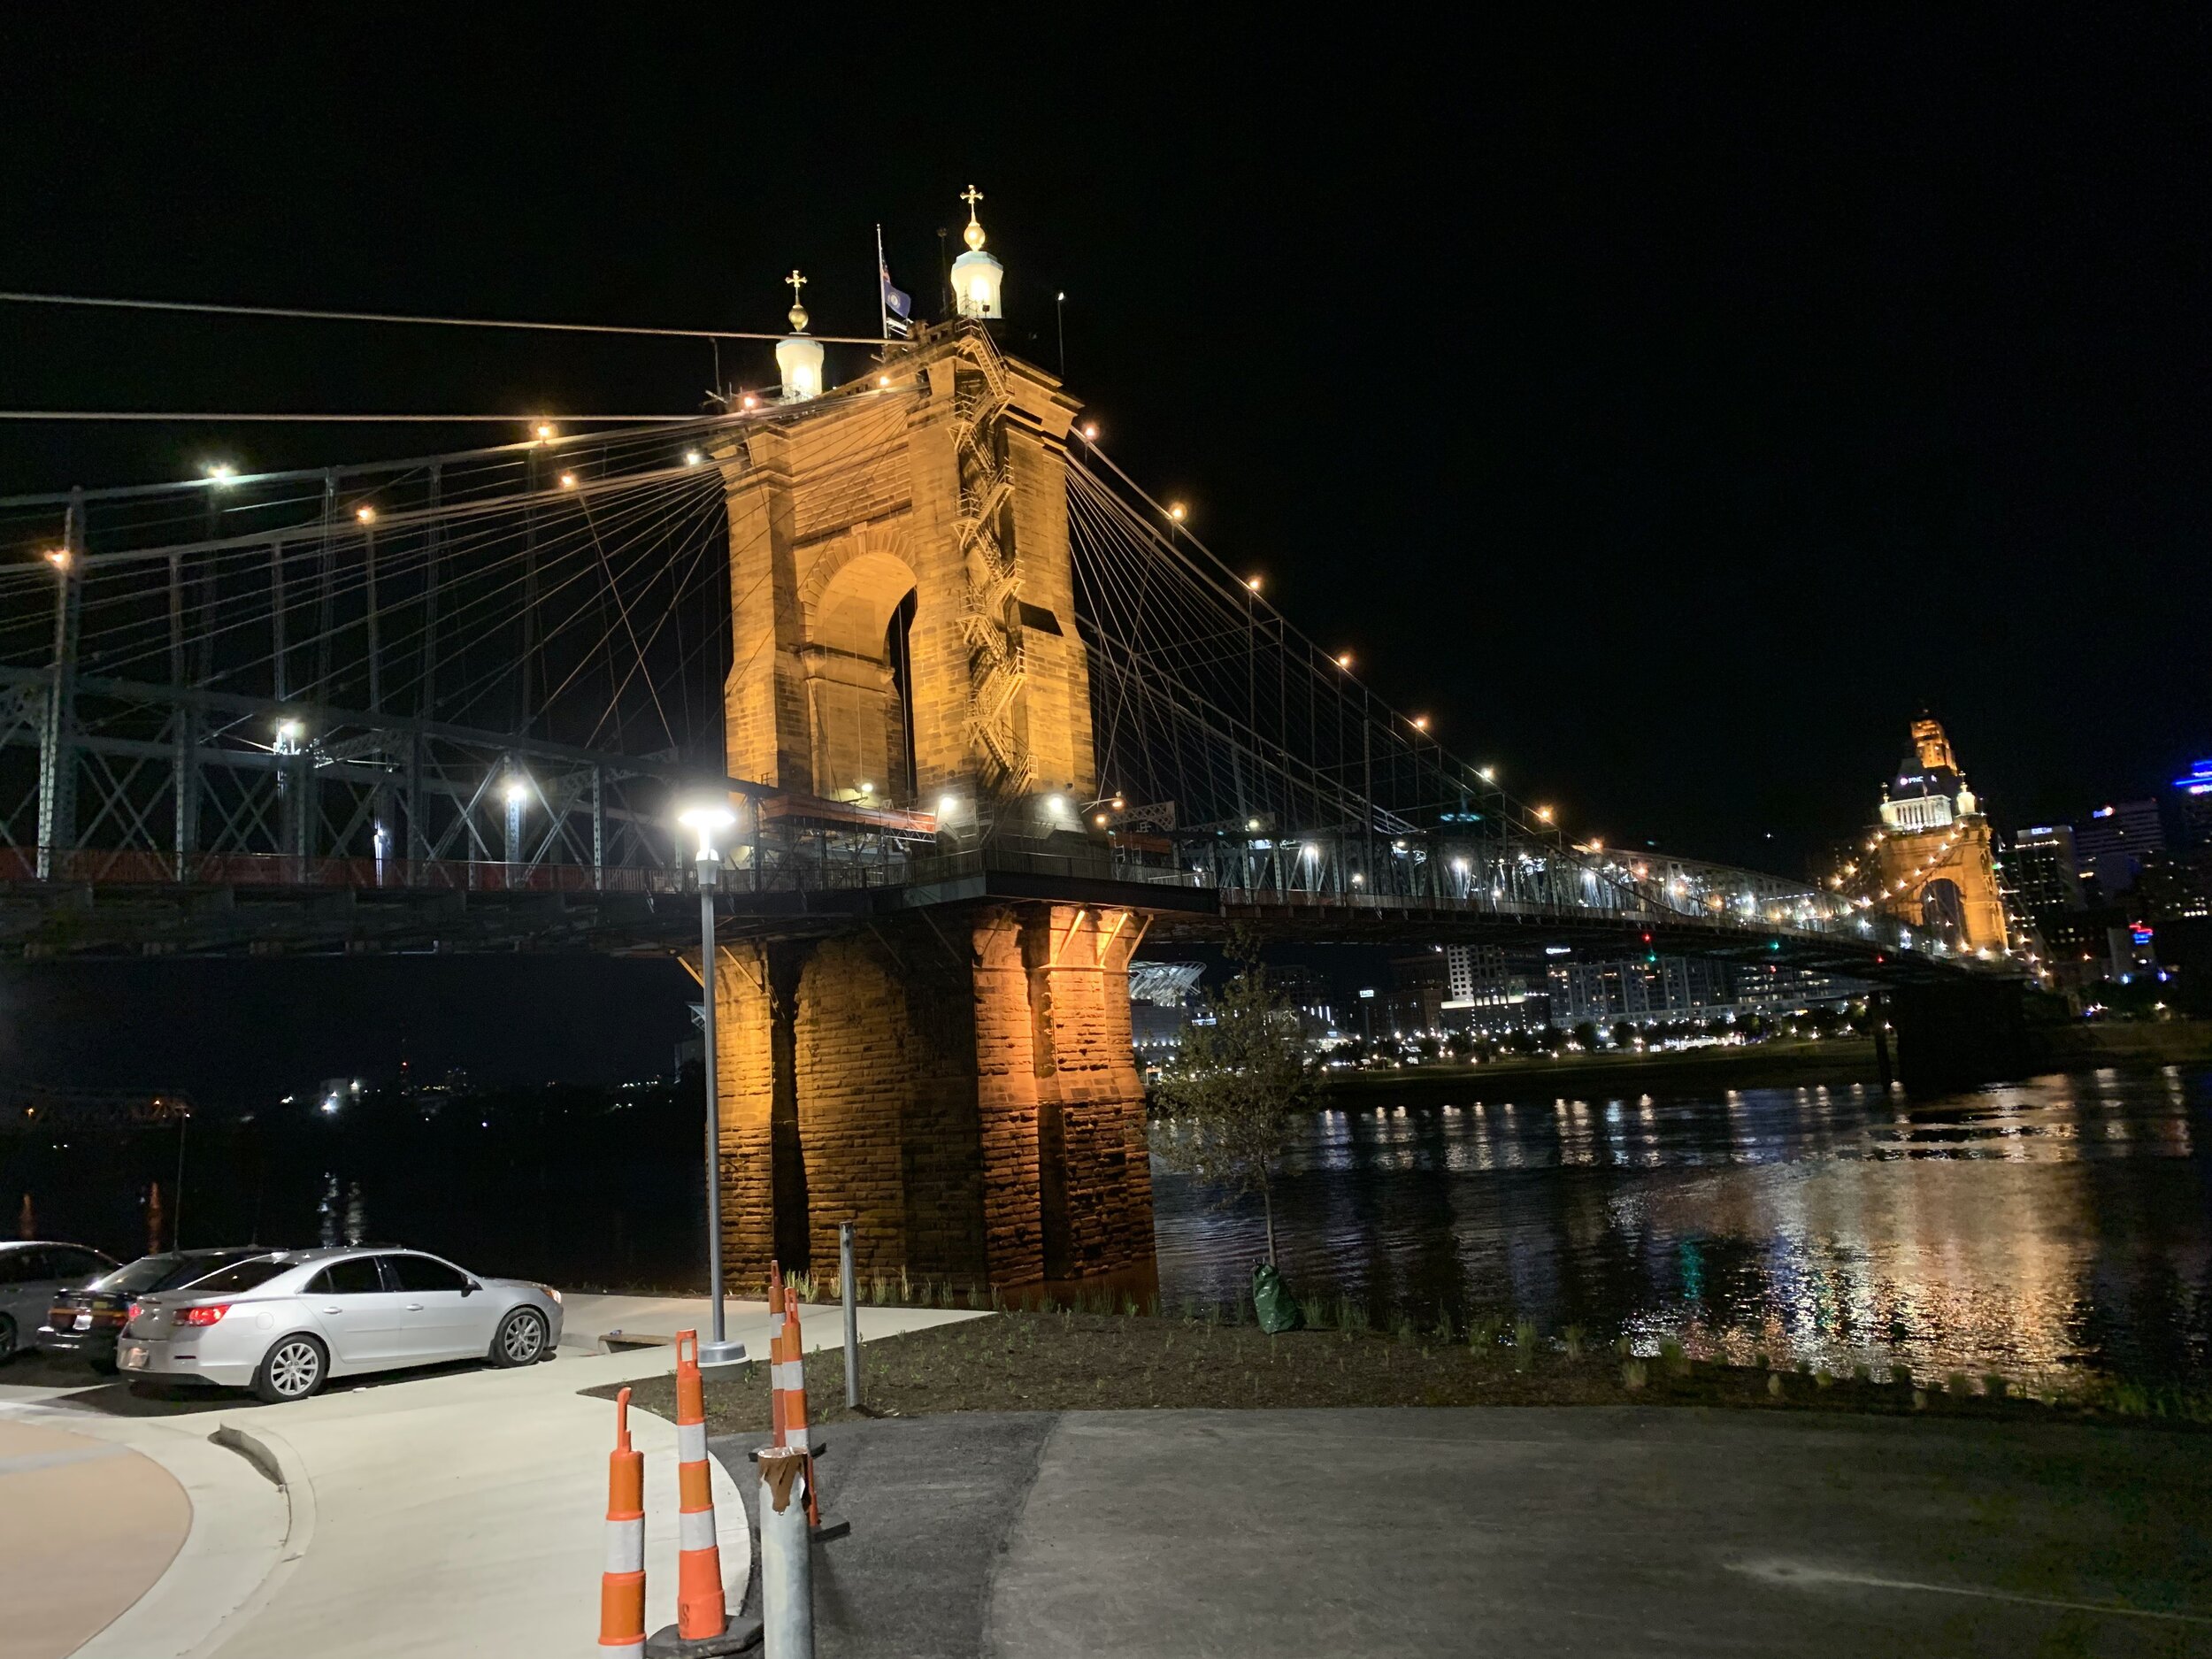 Night Shot of the Bridge